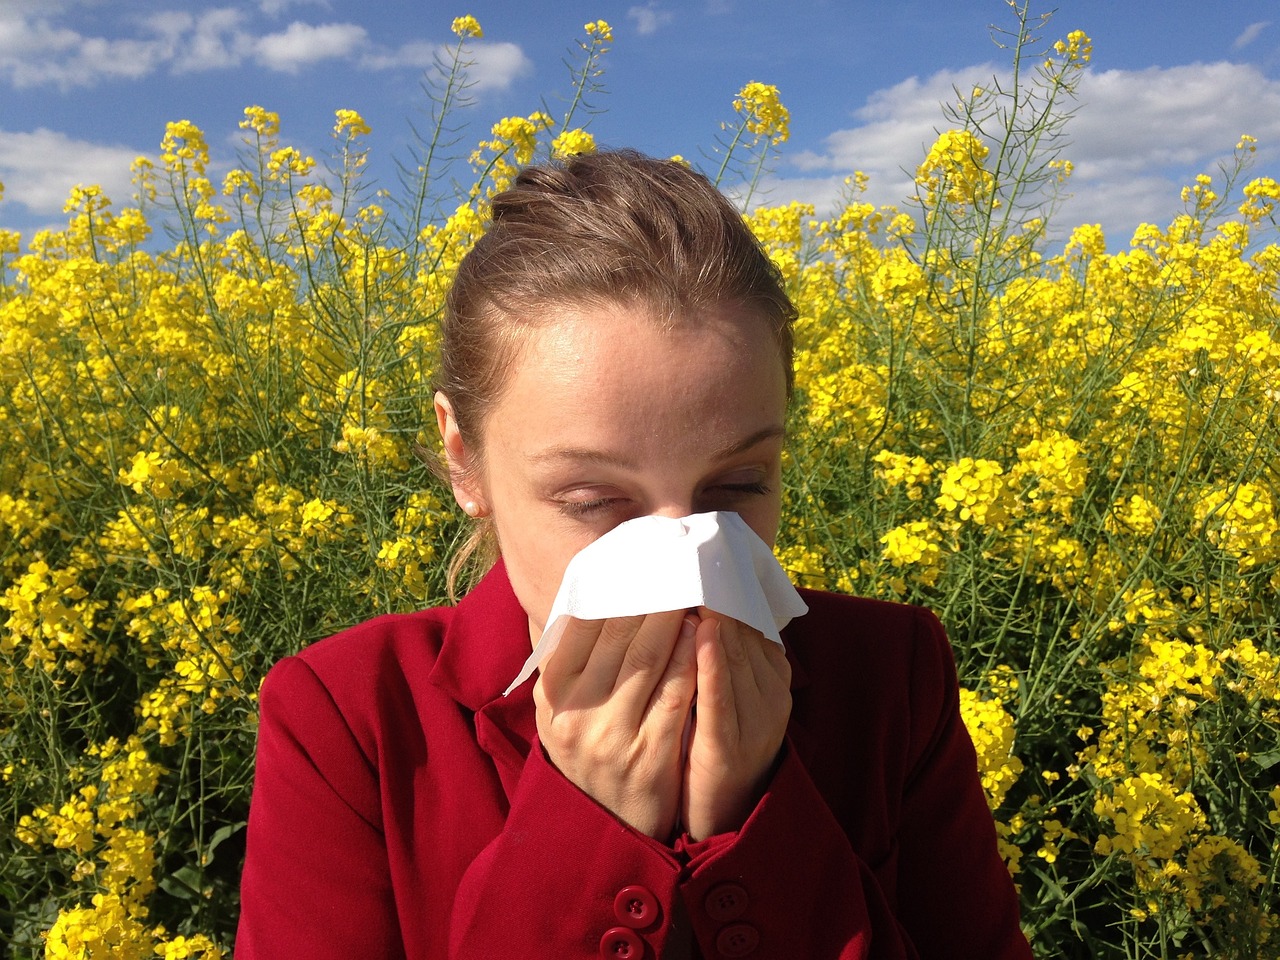 ¿La primavera te hace estornudar? No eres el único, el 7% de los mexicanos padece algún tipo de alergia estacional, pero pocos lo saben